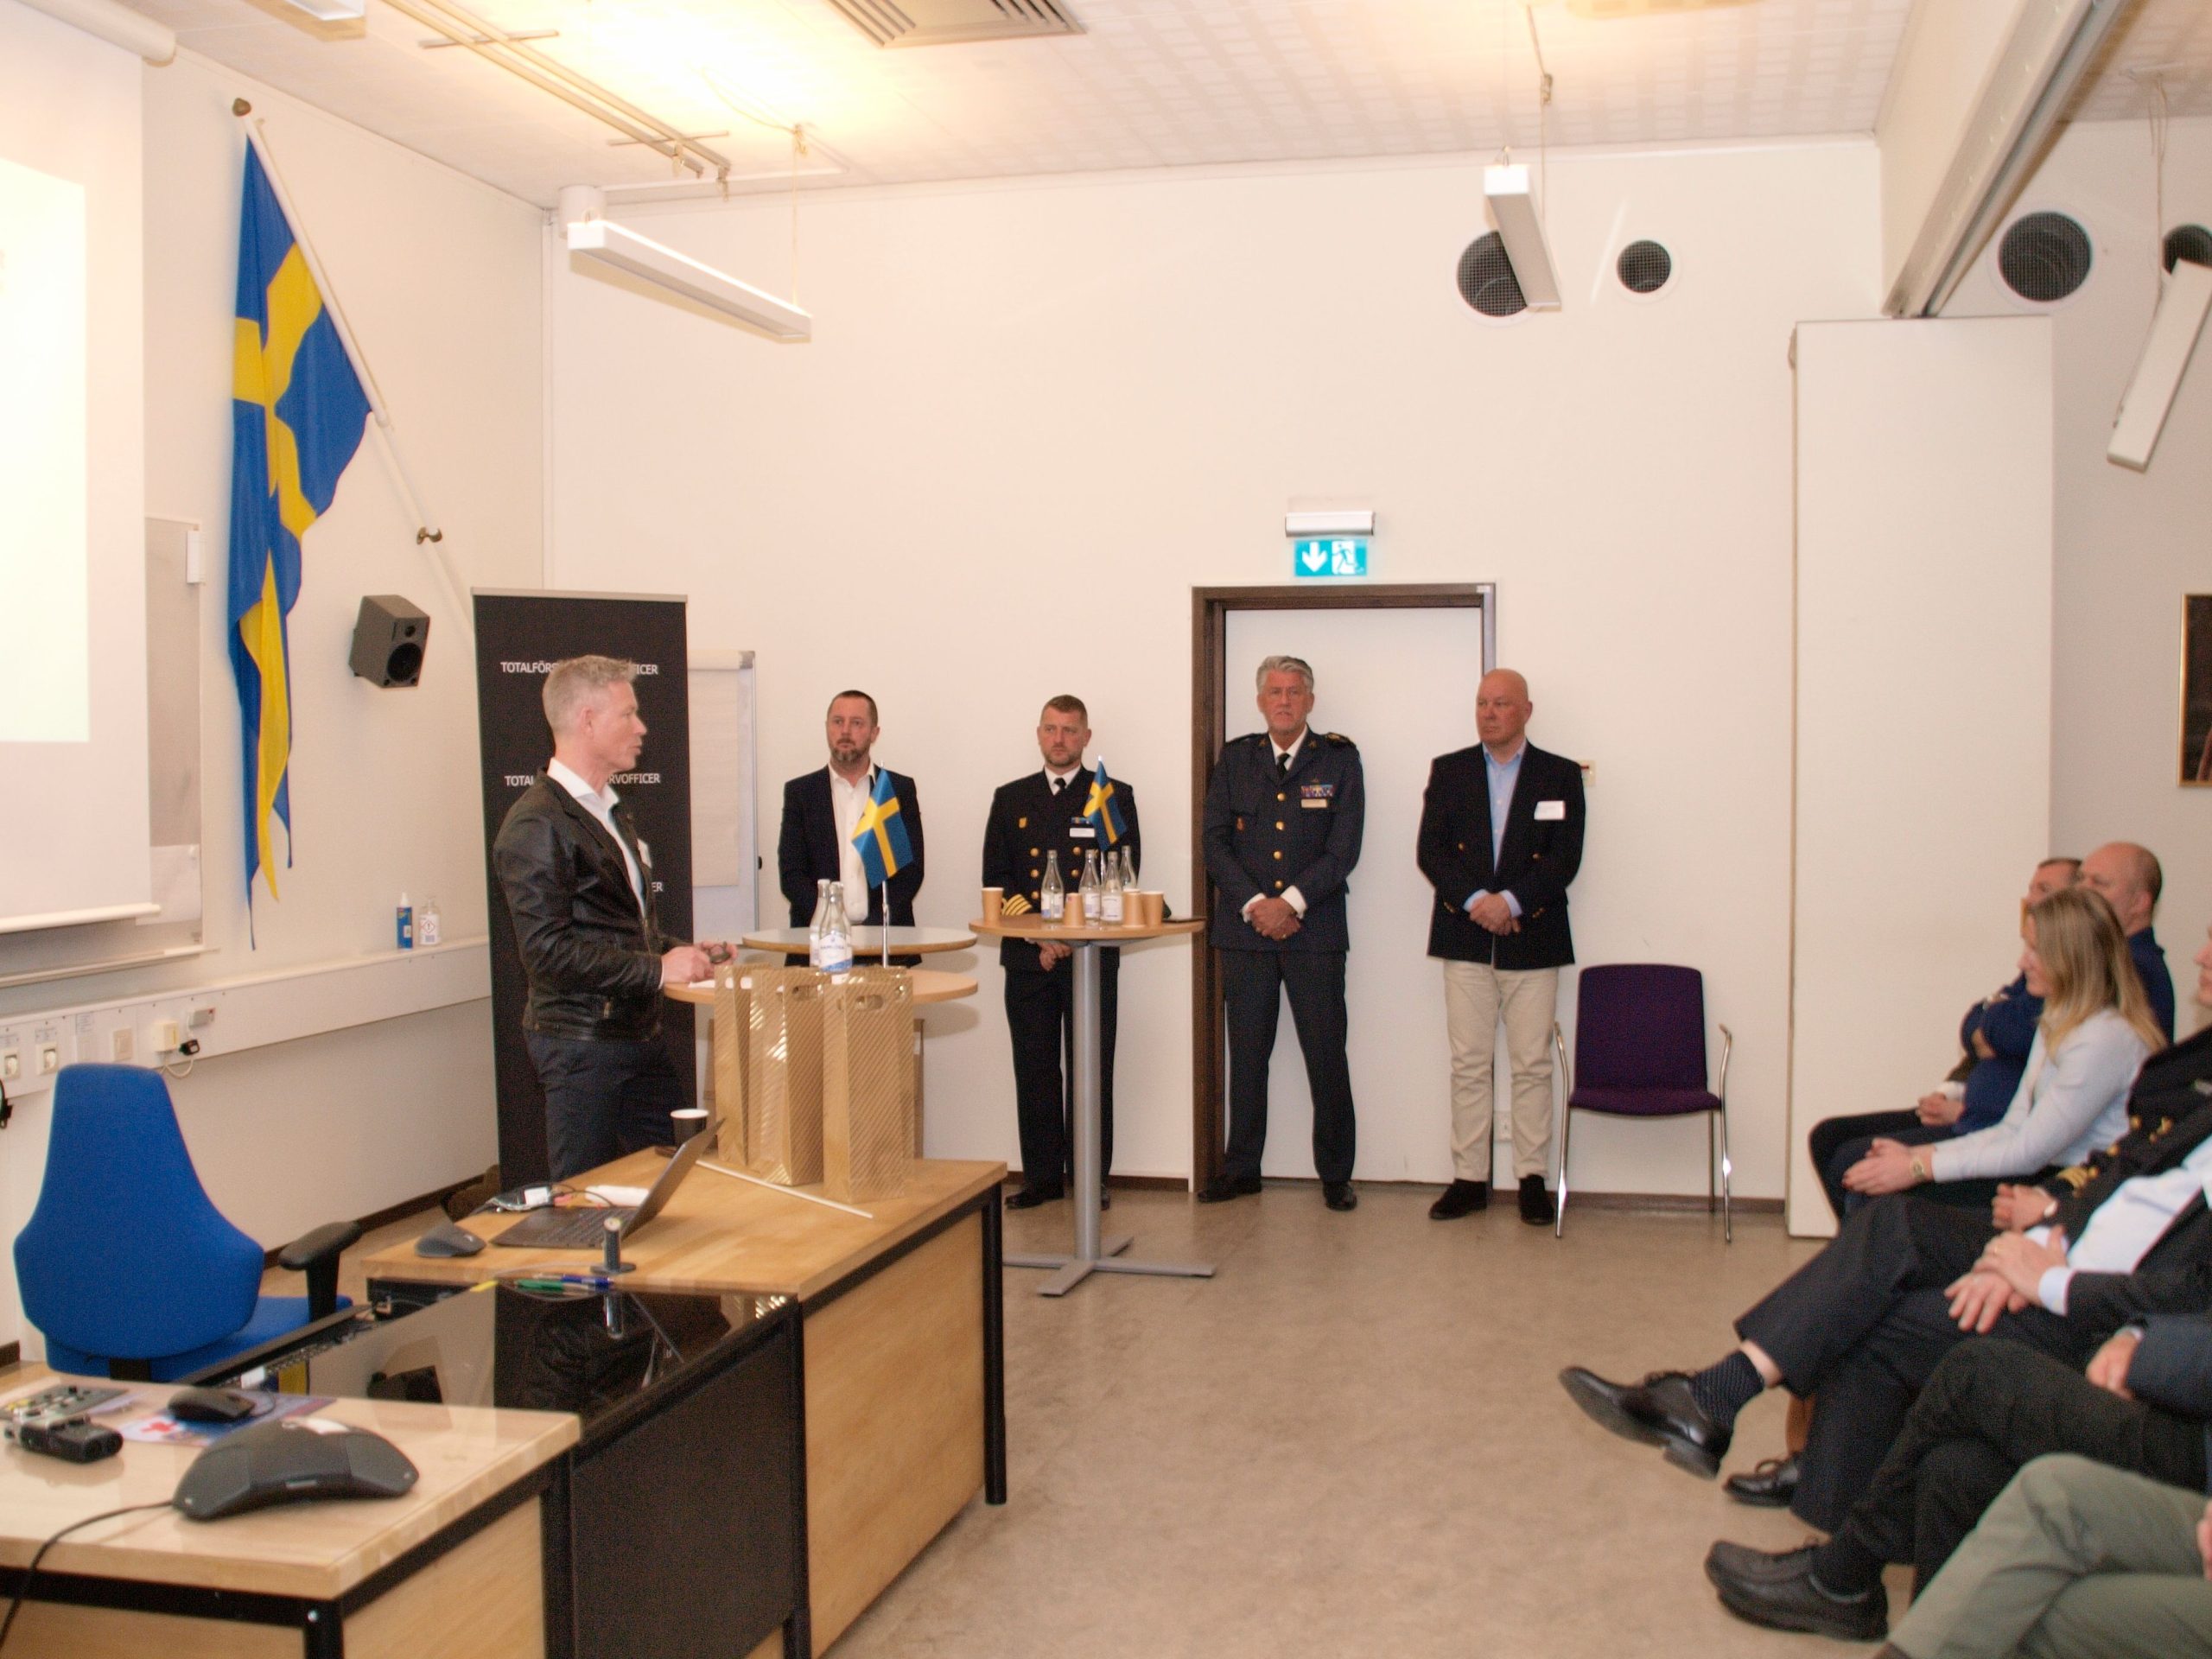 Extrainsatt möte för RO – Västra Sverige